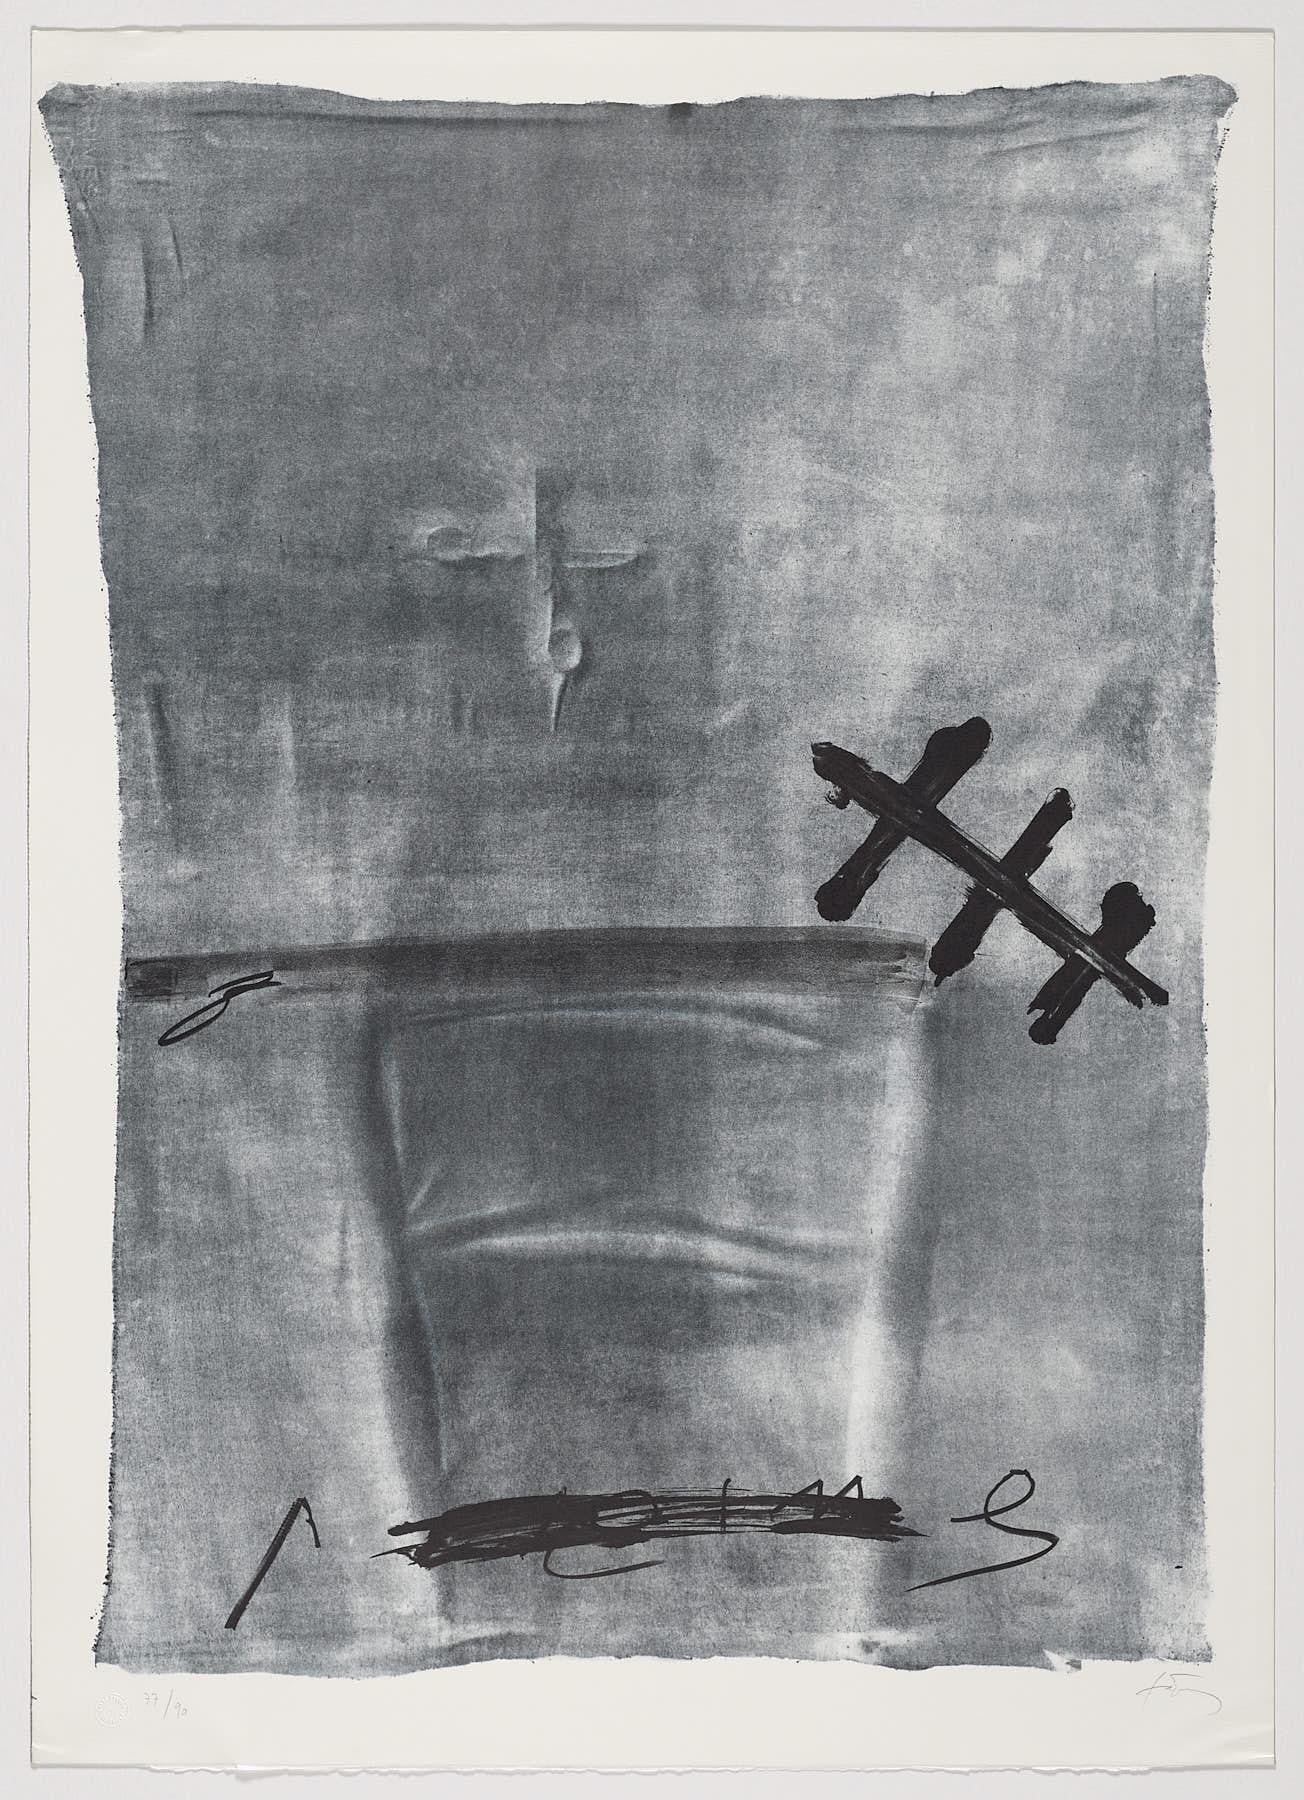 Lithographie d'artiste espagnol signée, édition limitée, numérotée n28 - Print de Antoni Tàpies